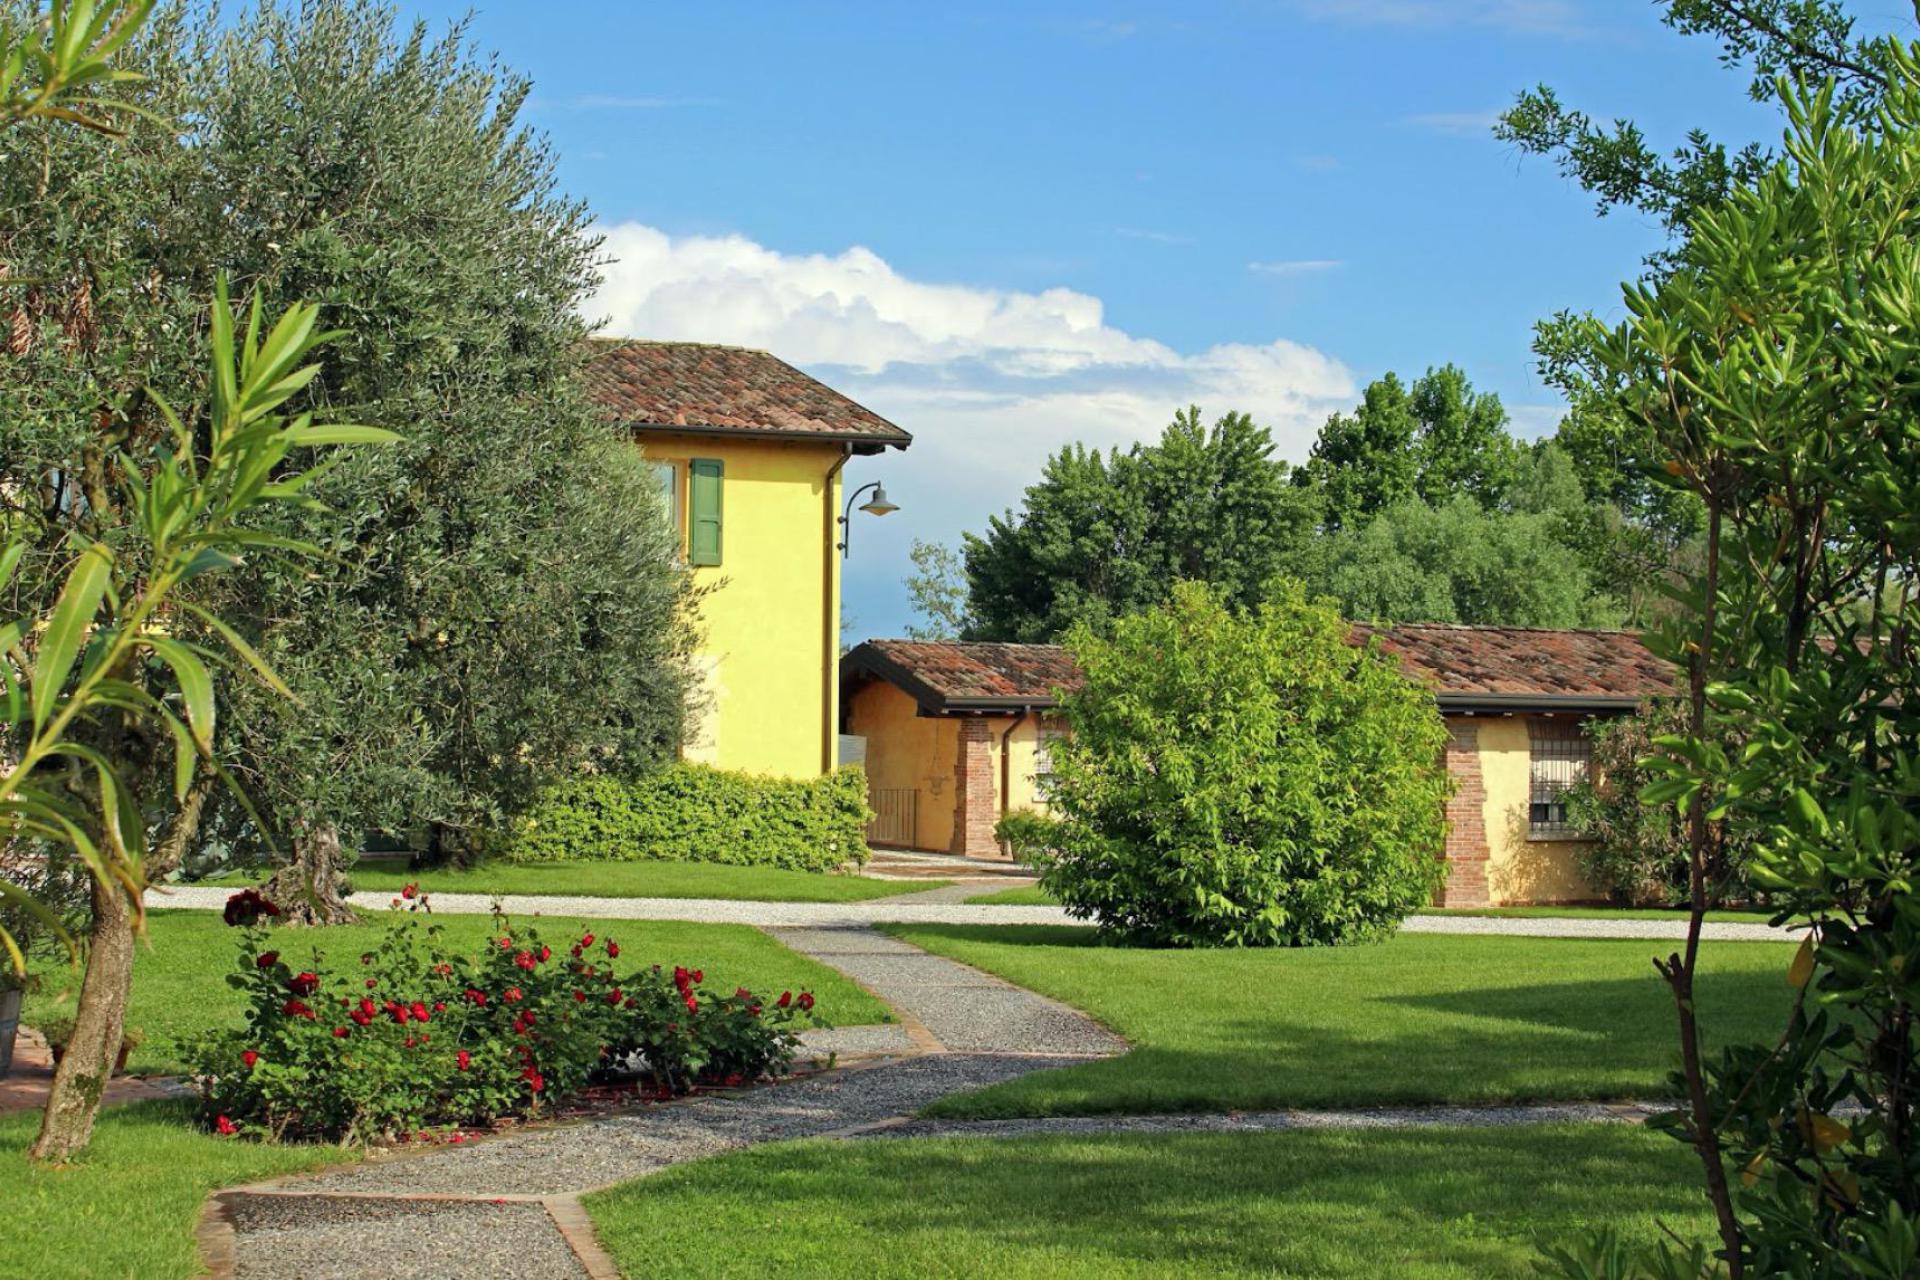 Agriturismo Lake Como and Lake Garda Agriturismo Lake Garda, surrounded by vineyards